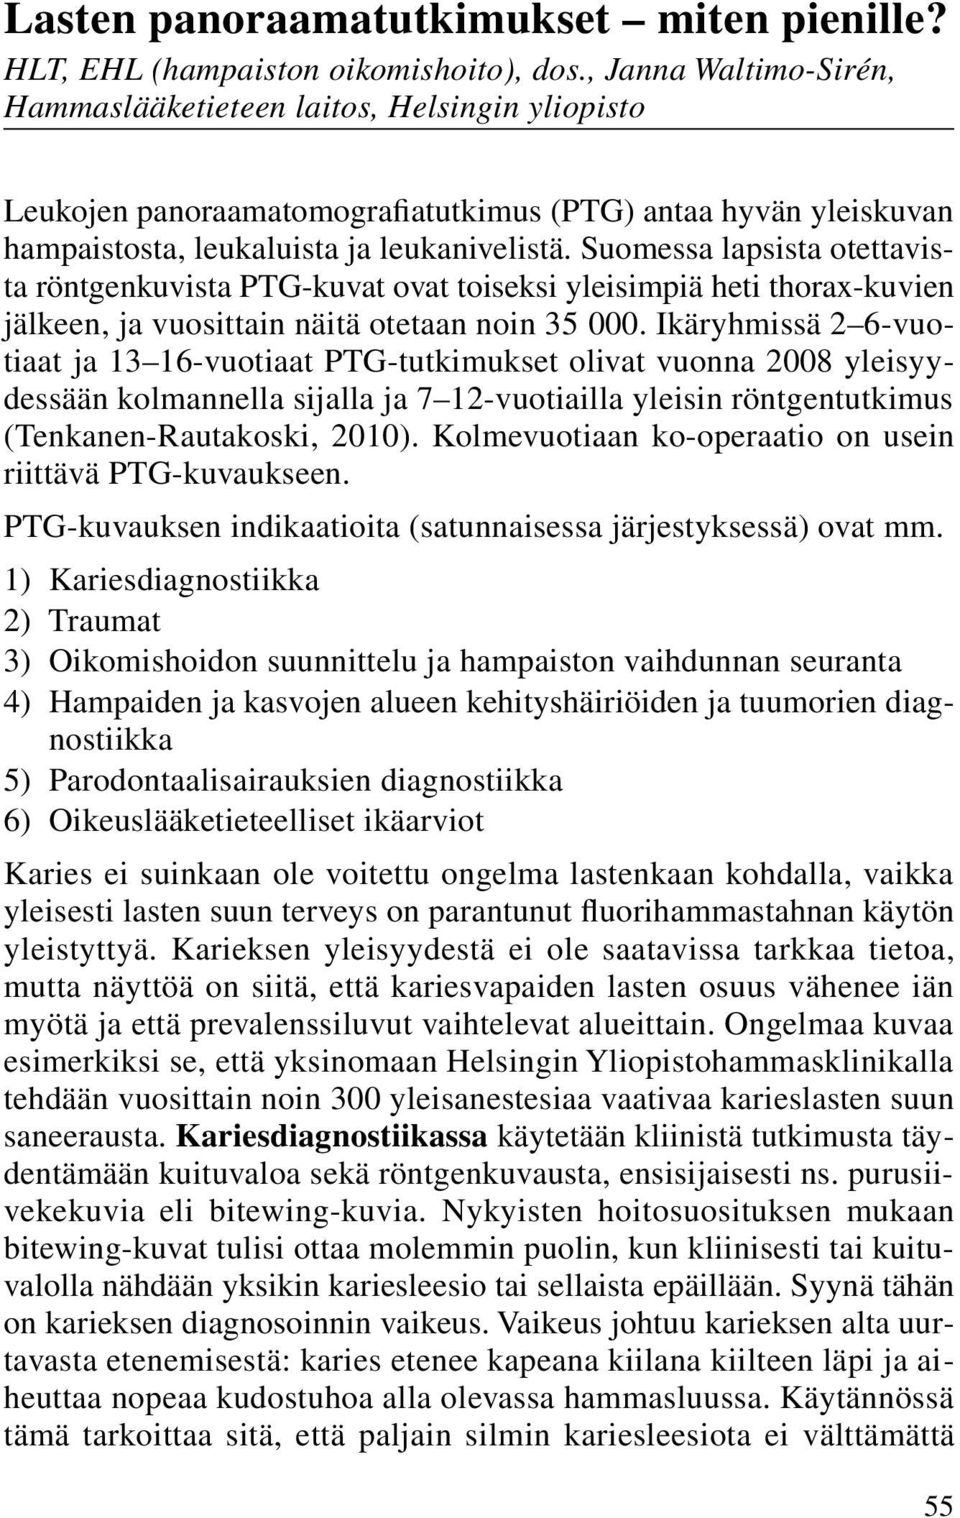 Suomessa lapsista otettavista röntgenkuvista PTG-kuvat ovat toiseksi yleisimpiä heti thorax-ku vien jälkeen, ja vuosittain näitä otetaan noin 35 000.